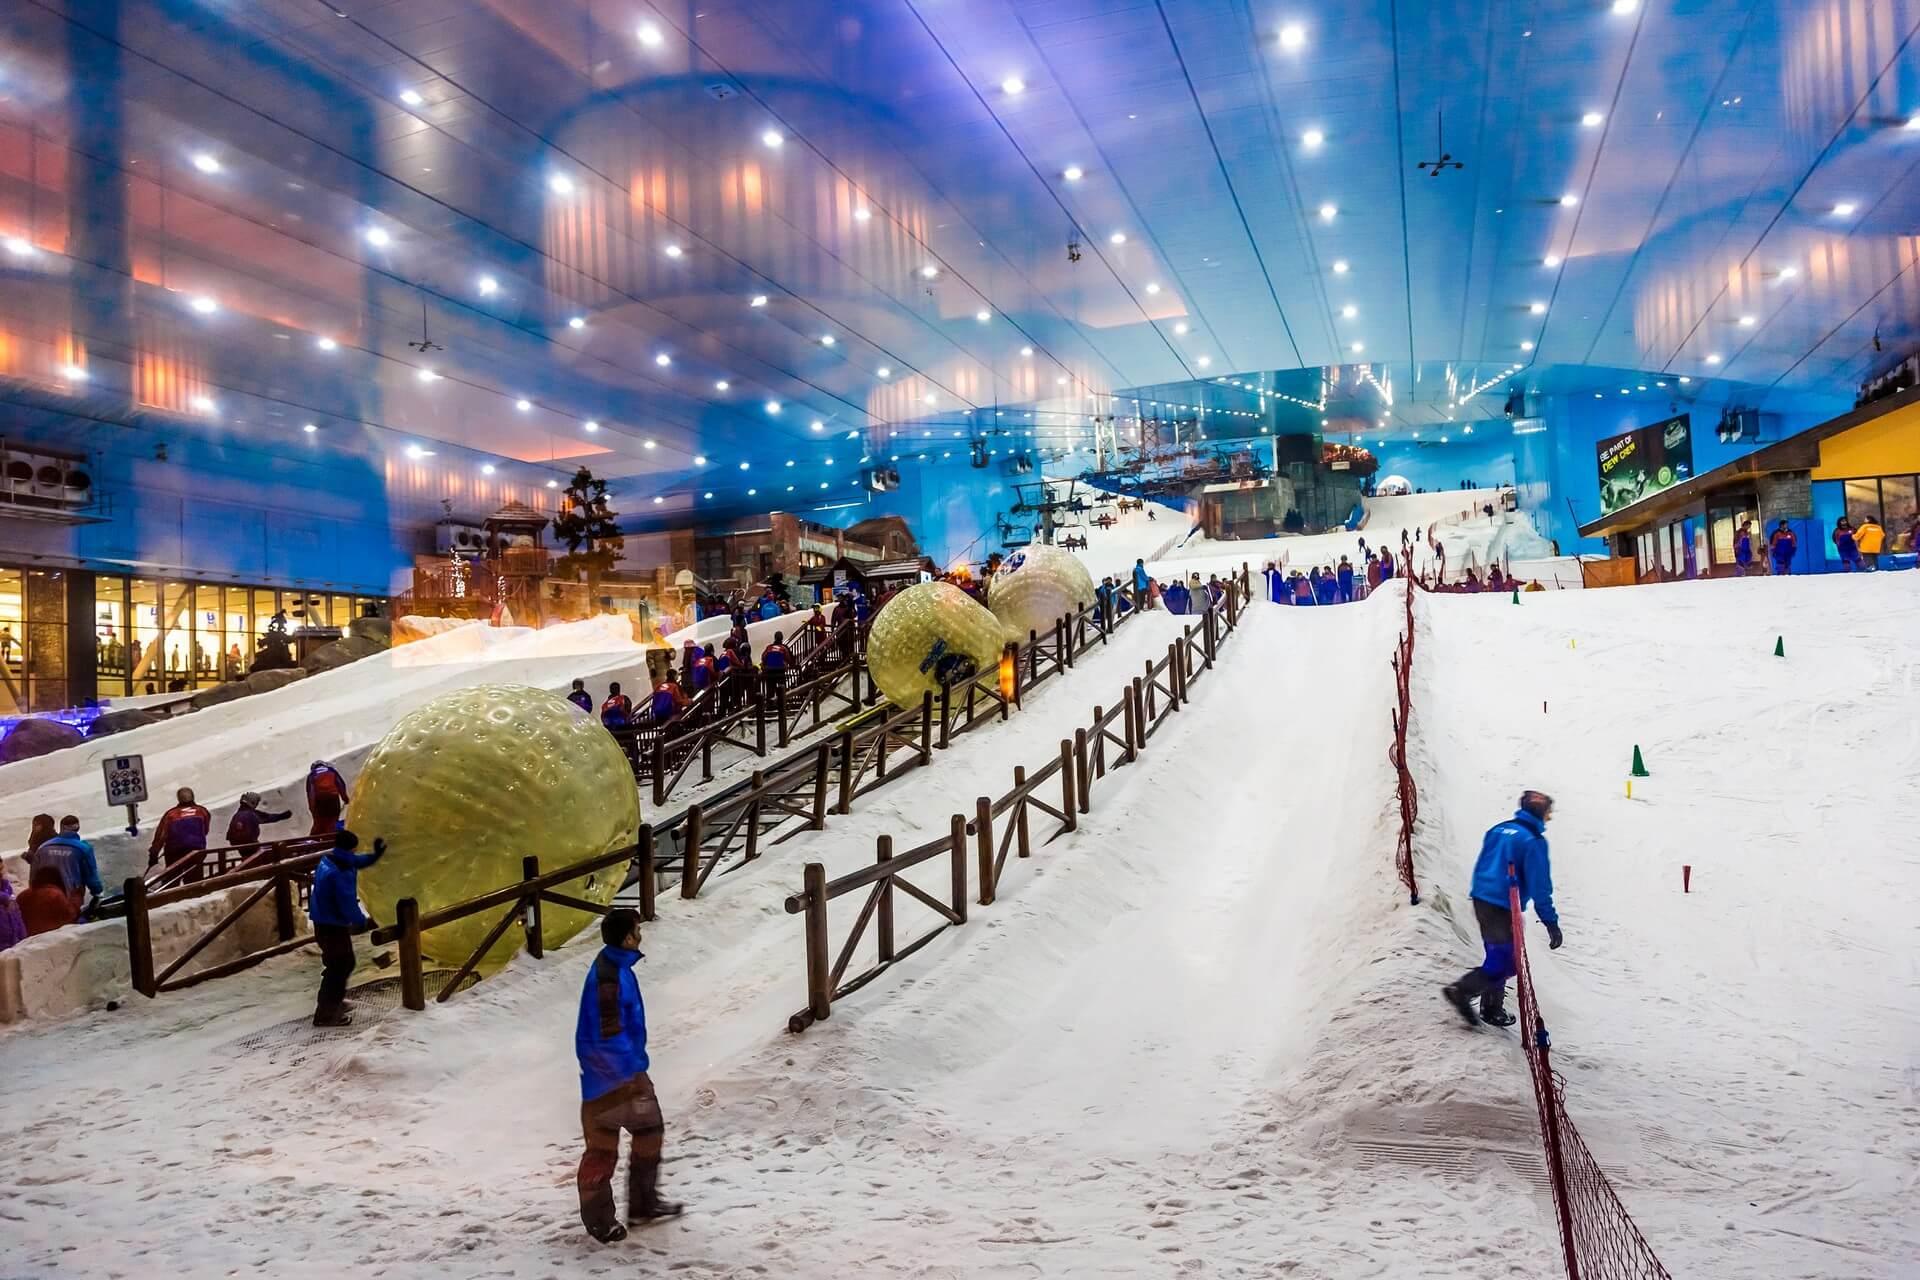 Ski Dubai ist ein Indoor-Skigebiet mit 22.500 Quadratmetern Indoor-Skifläche. Es ist ein Teil der Mall of the Emirates